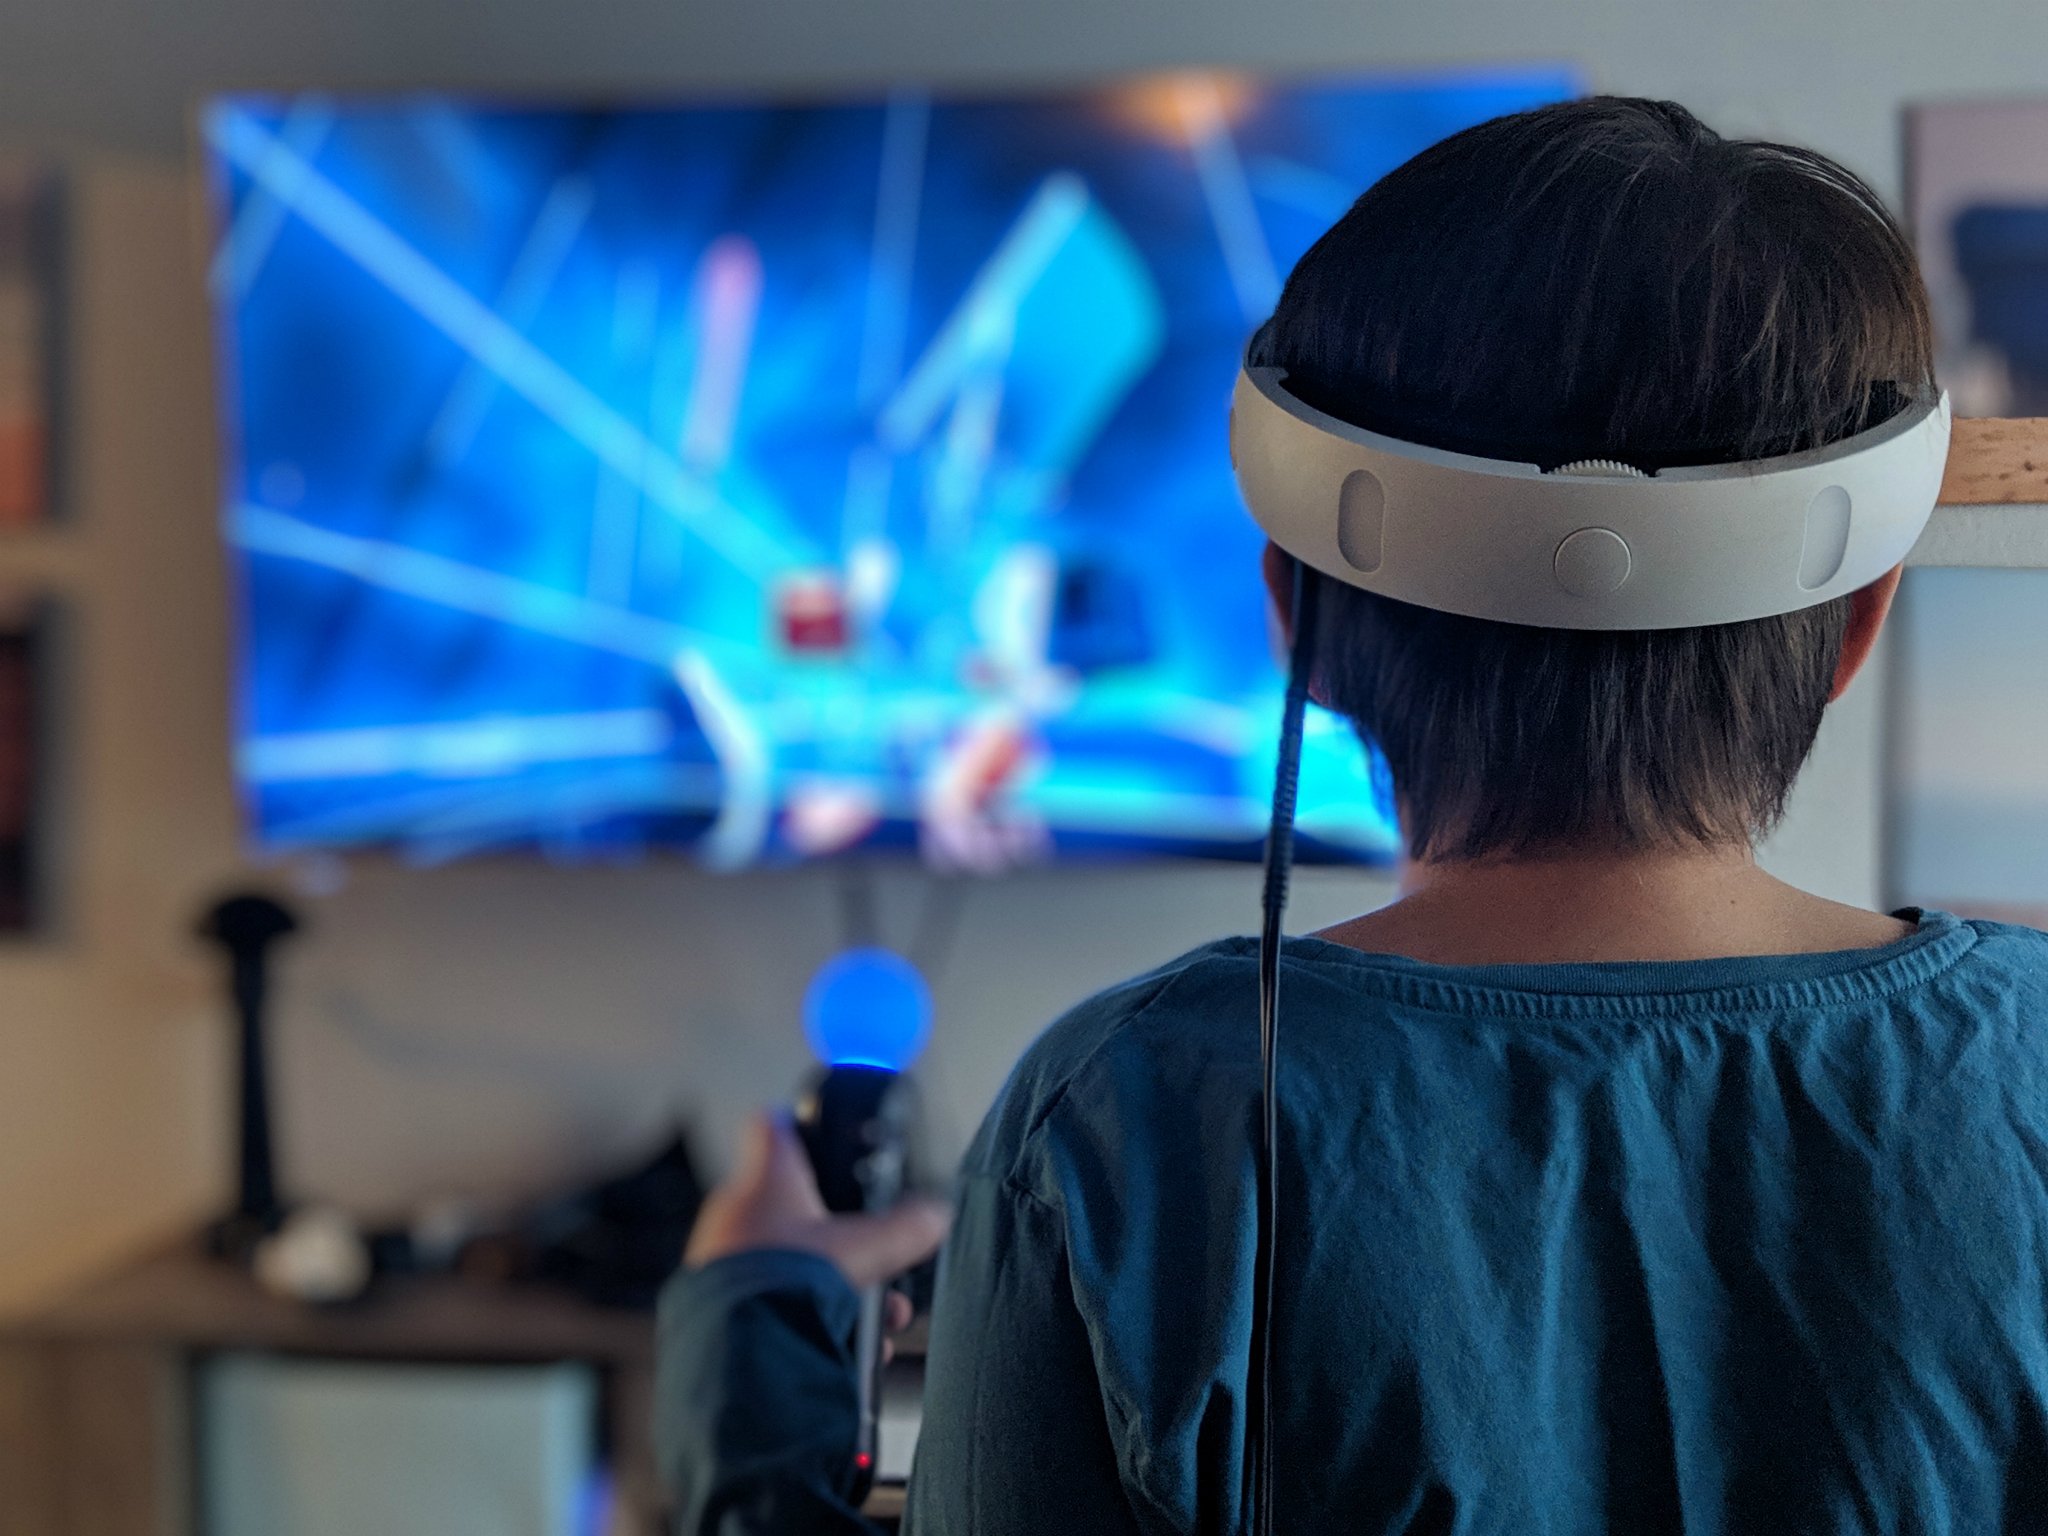 ugunstige Adskillelse Vag Beat Saber for PlayStation VR review: As good as you hoped | Android Central